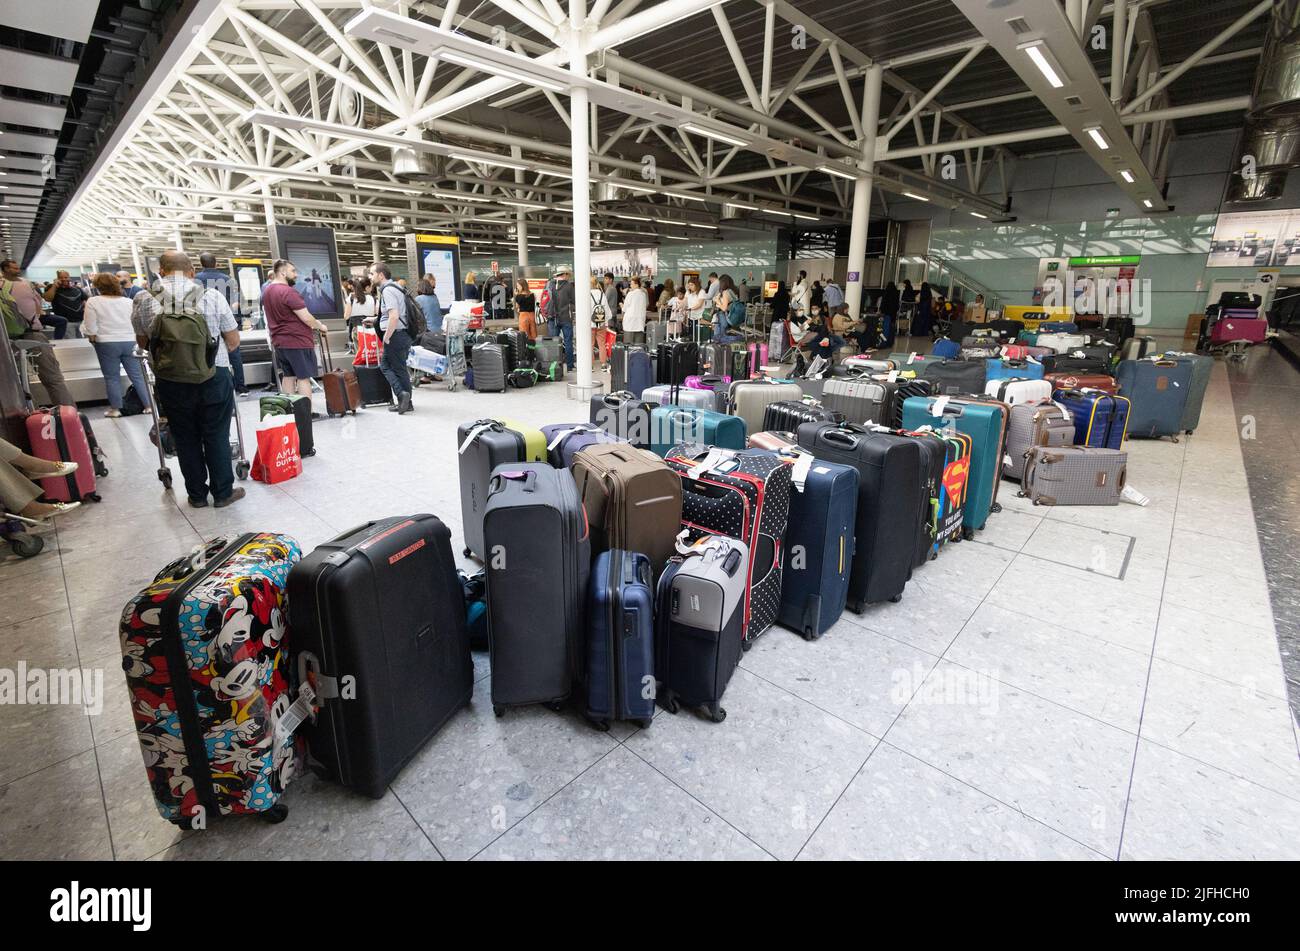 Interruption de voyage à l'aéroport d'Heathrow ; bagages en attente non récupérés dans la collecte des bagages, retard intérieur au terminal 3, aéroport de Londres au Royaume-Uni ; Banque D'Images